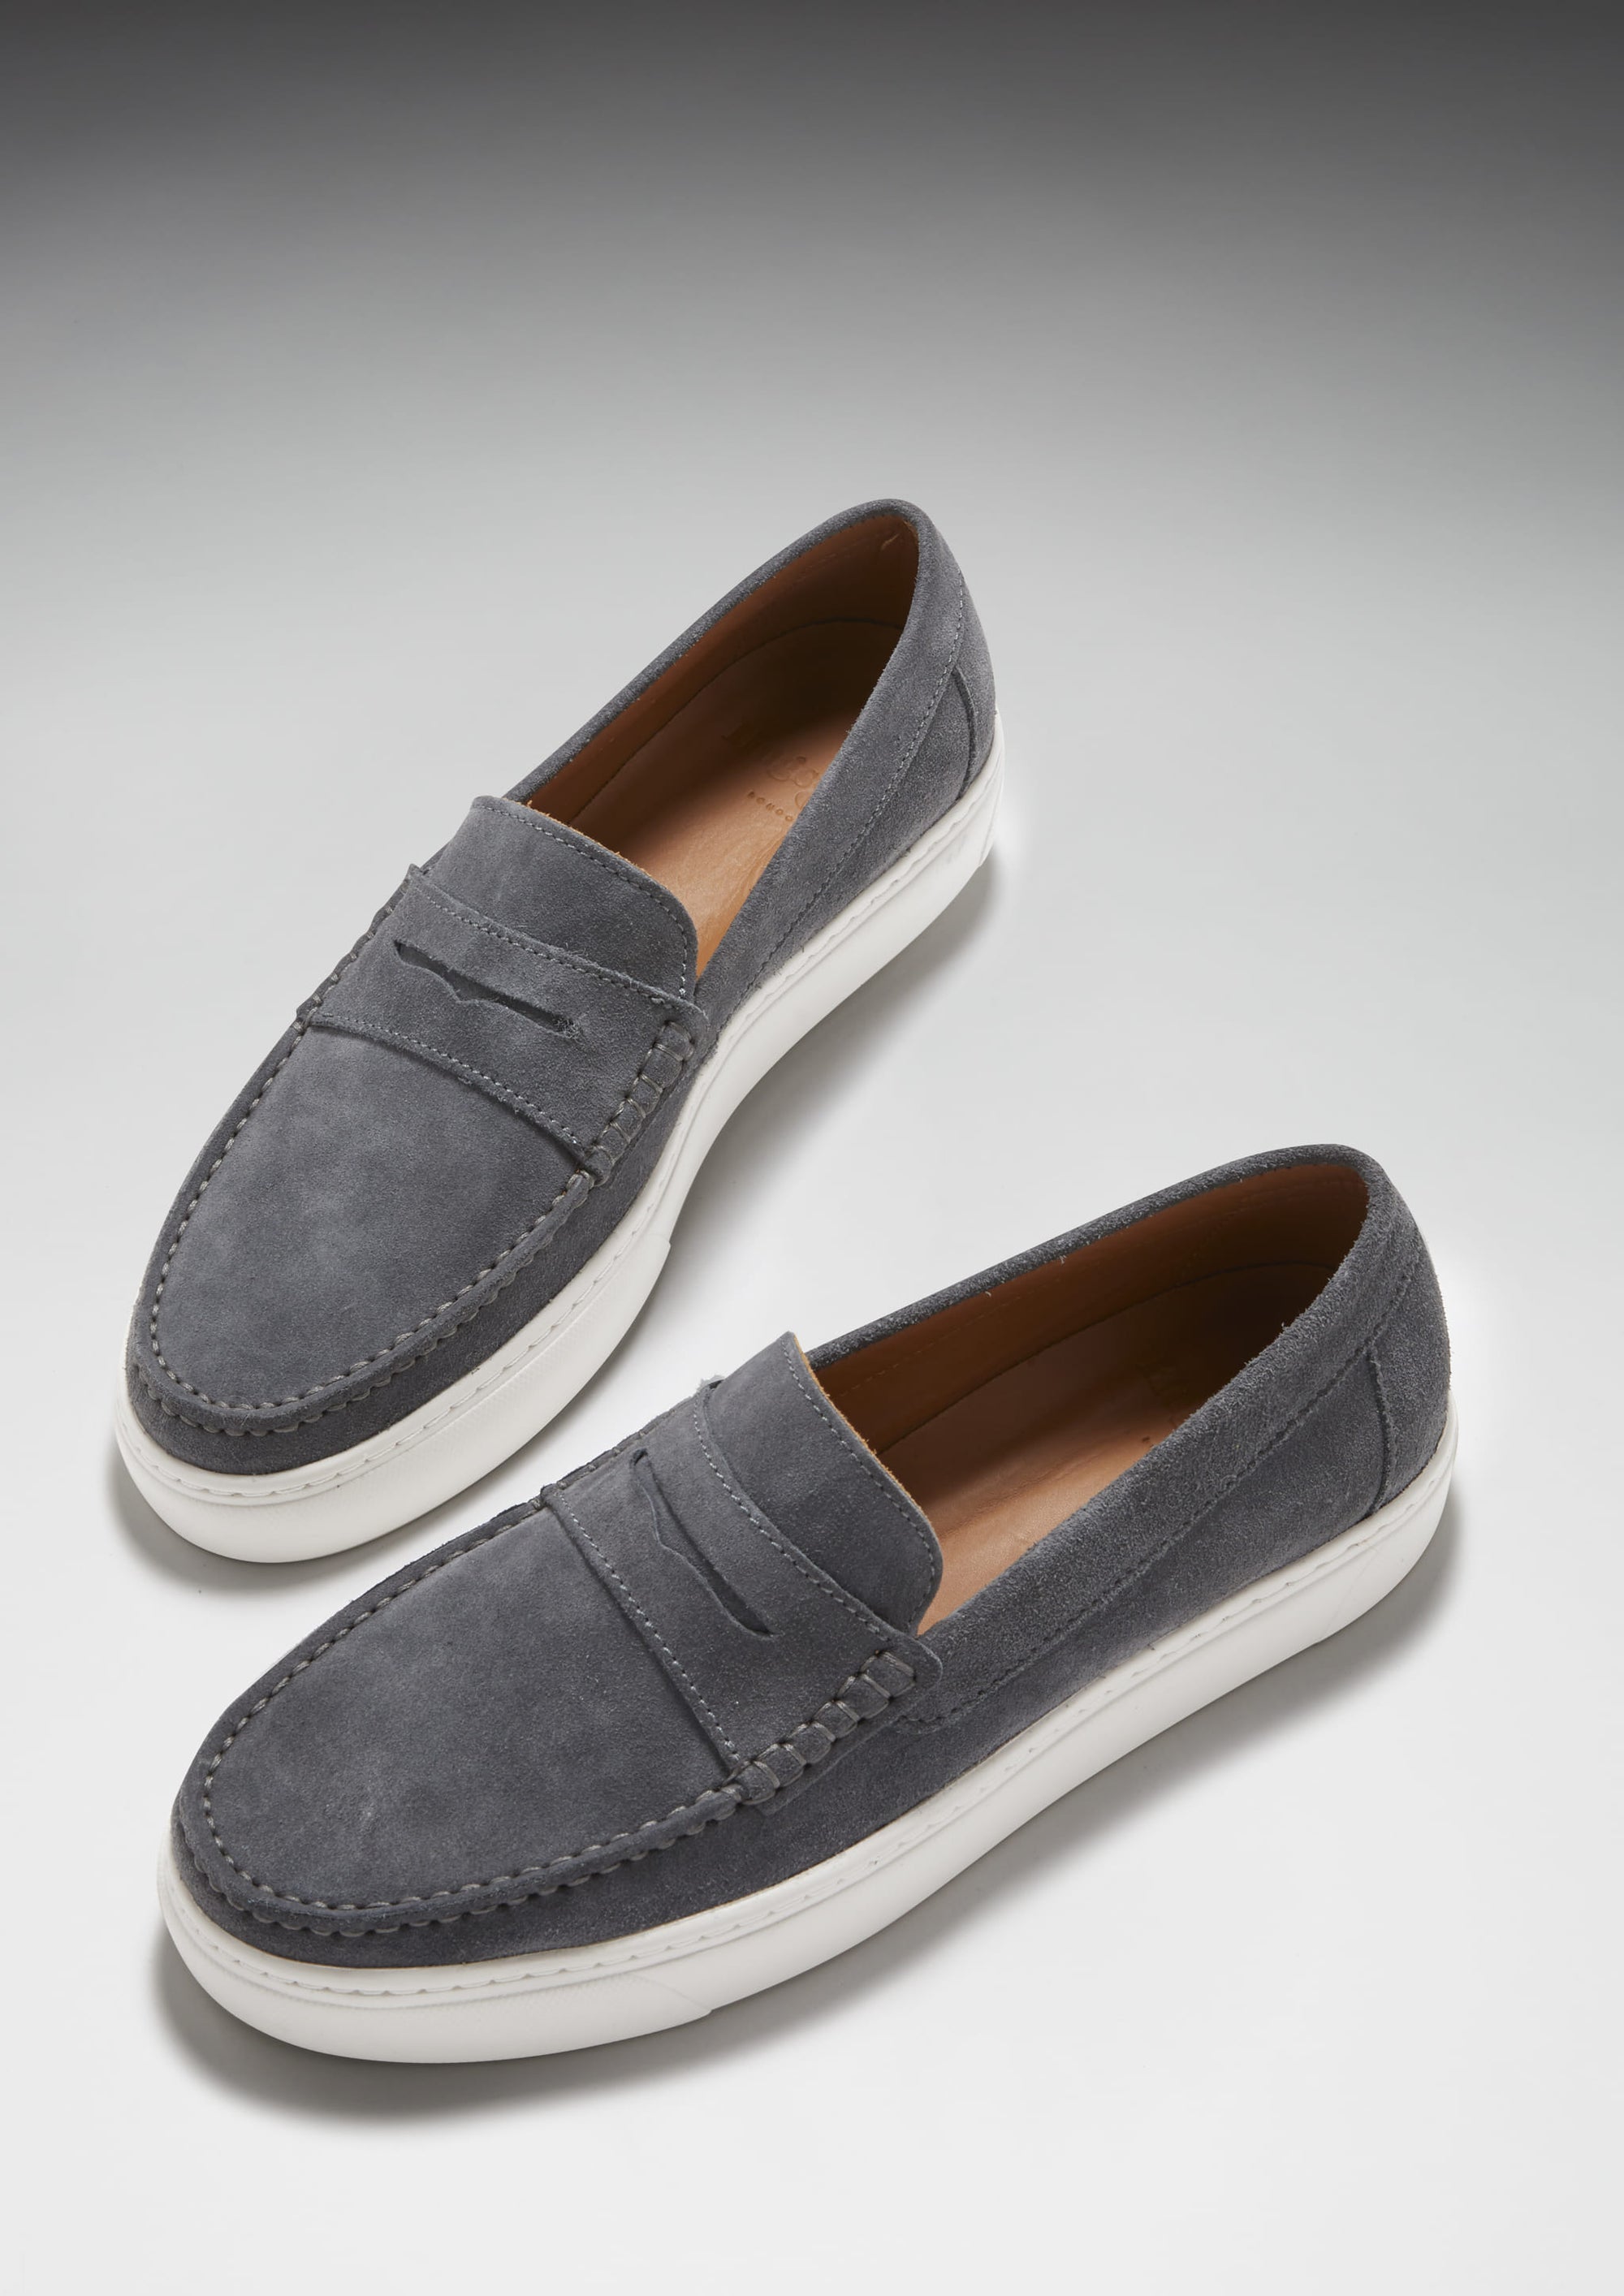 Slip-on Sneaker Loafers, slate grey suede